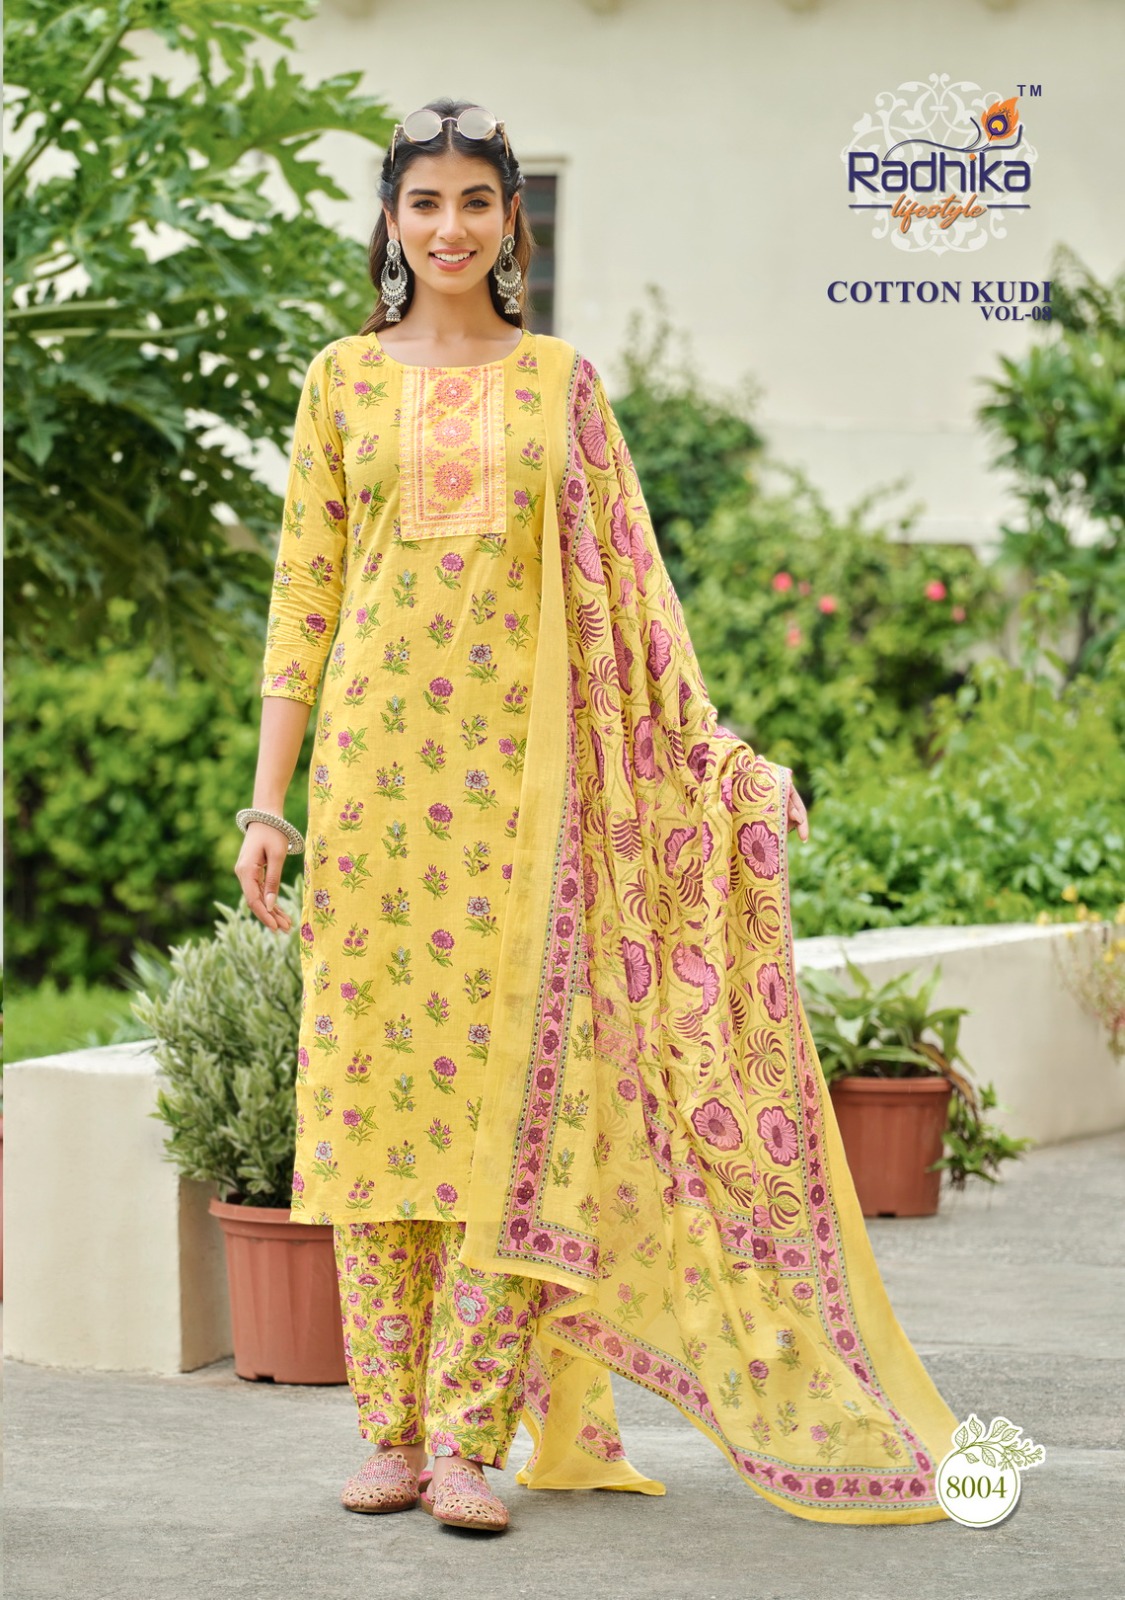 Radhika Cotton Kudi Vol 8 collection 5